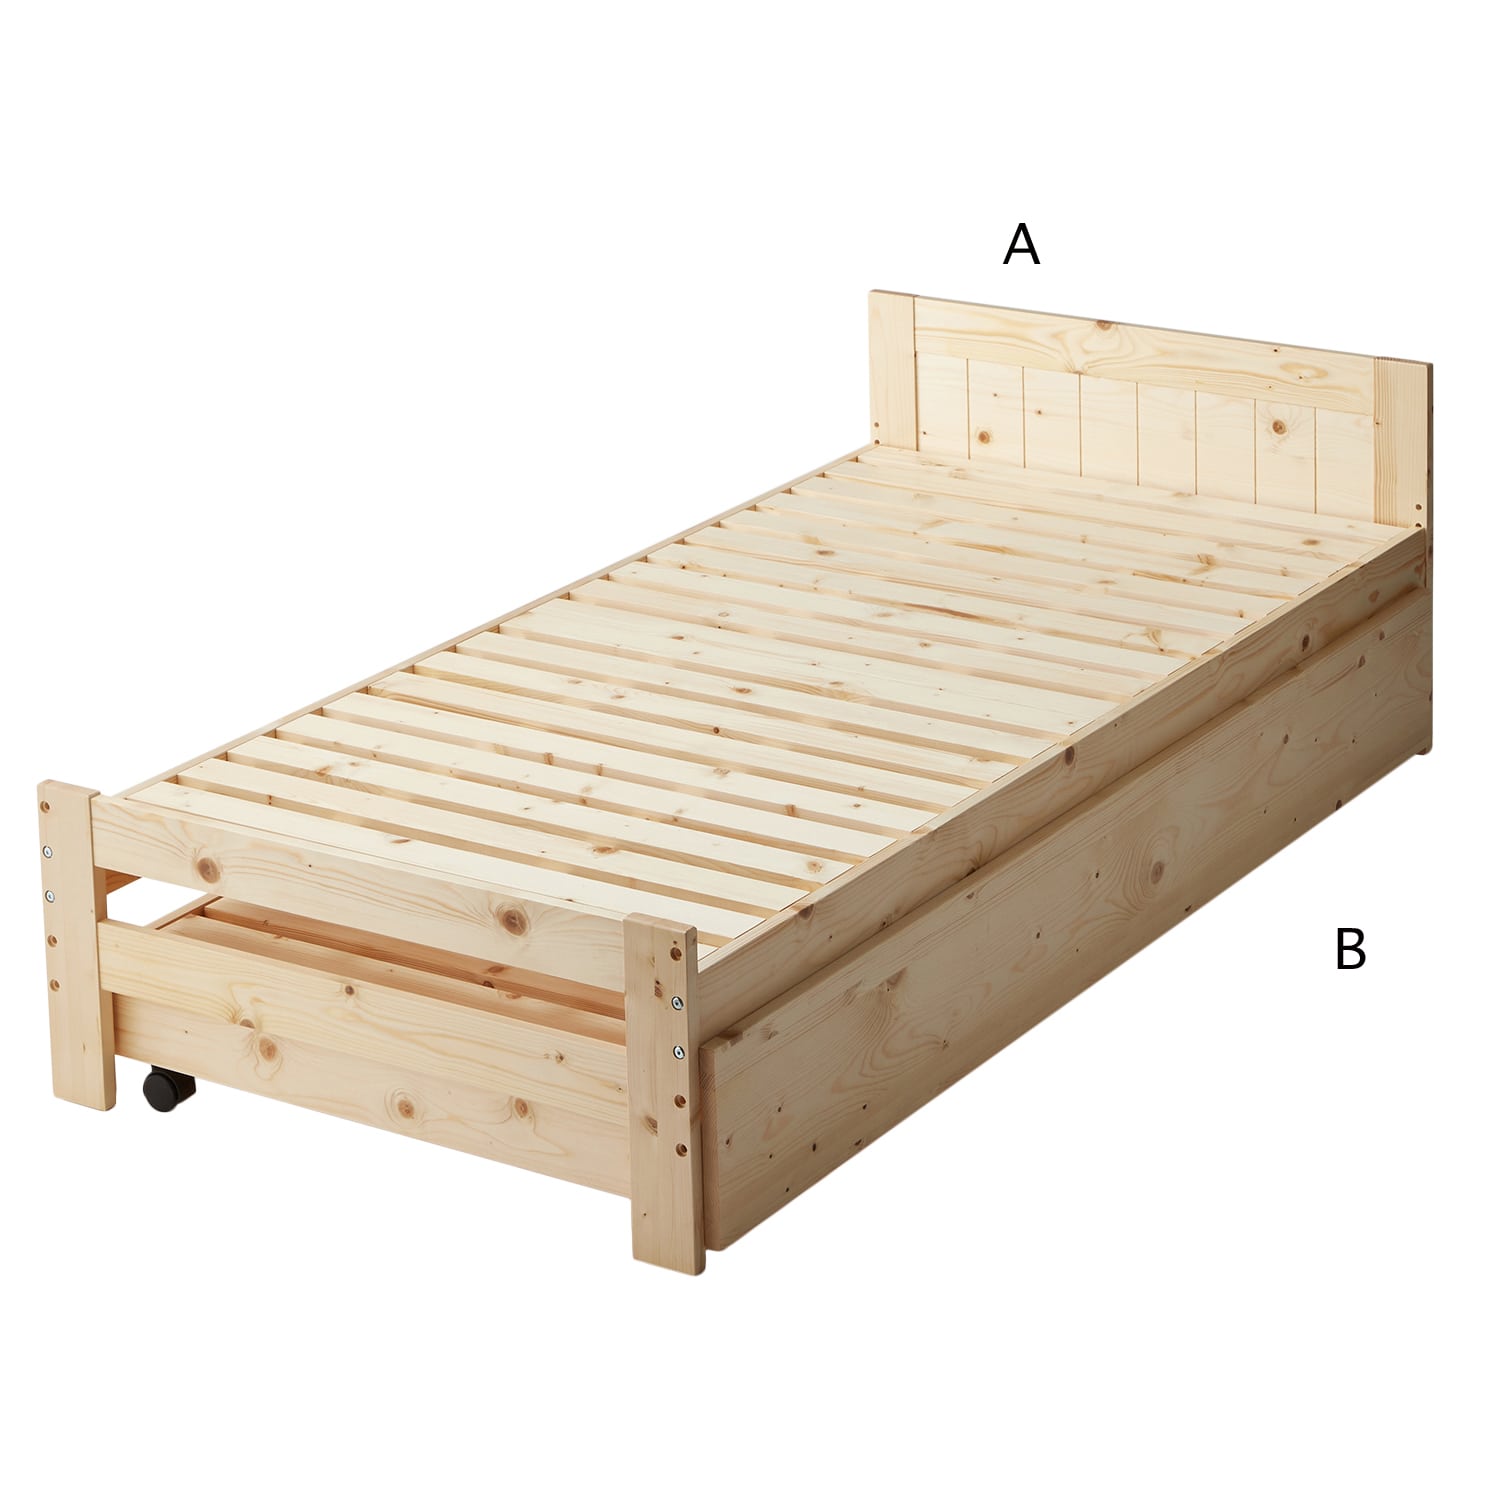 ベルメゾン 天然木パイン材の組み合わせて使える親子ベッド A(A